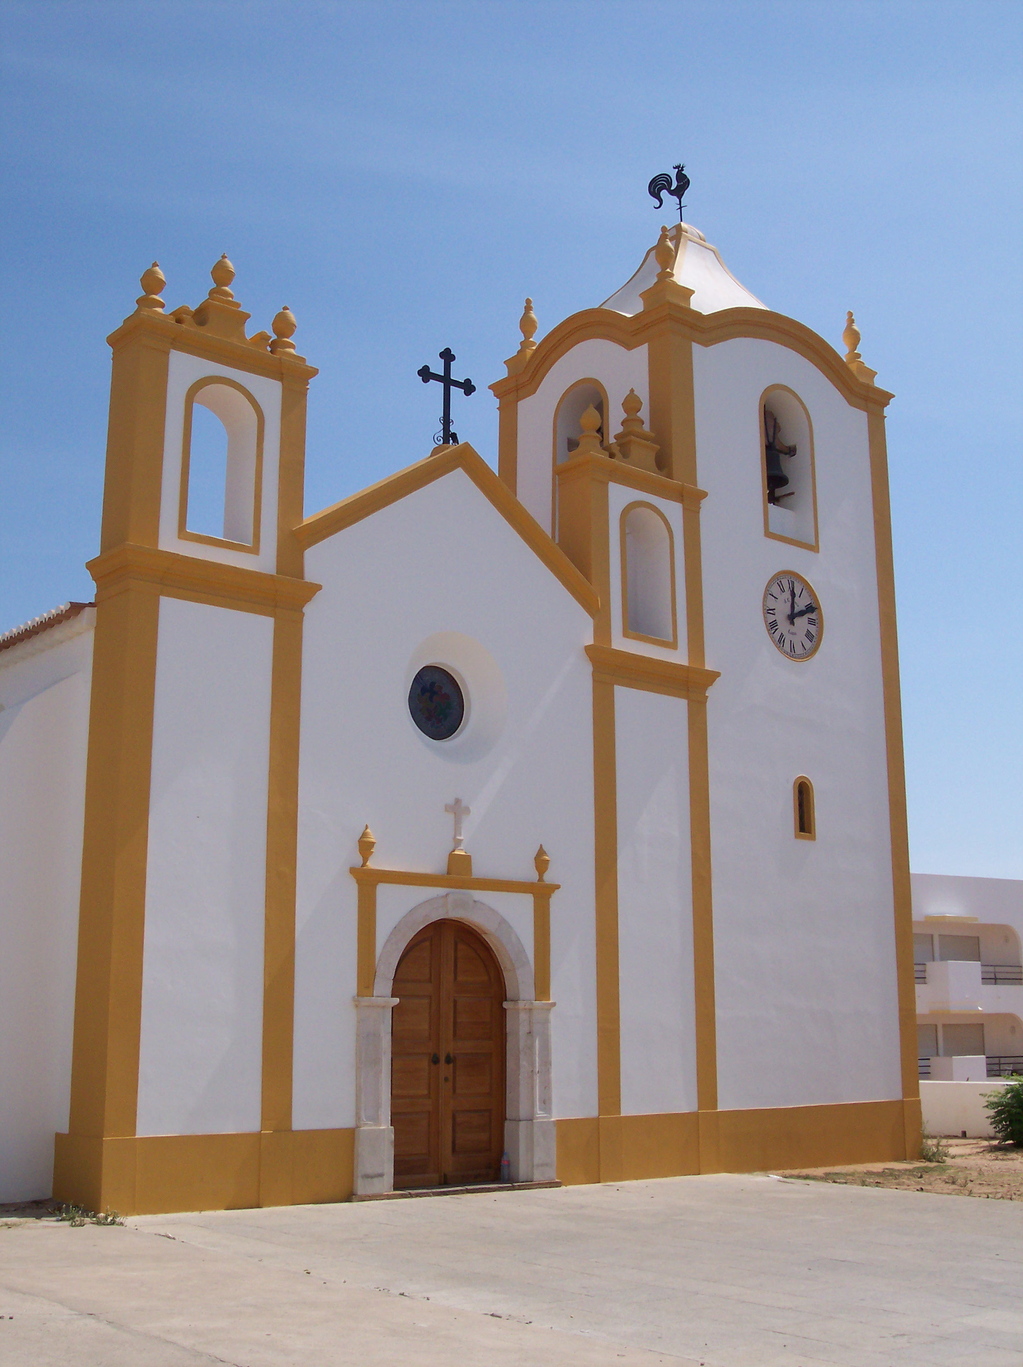 The church at Praia. Brian McNair